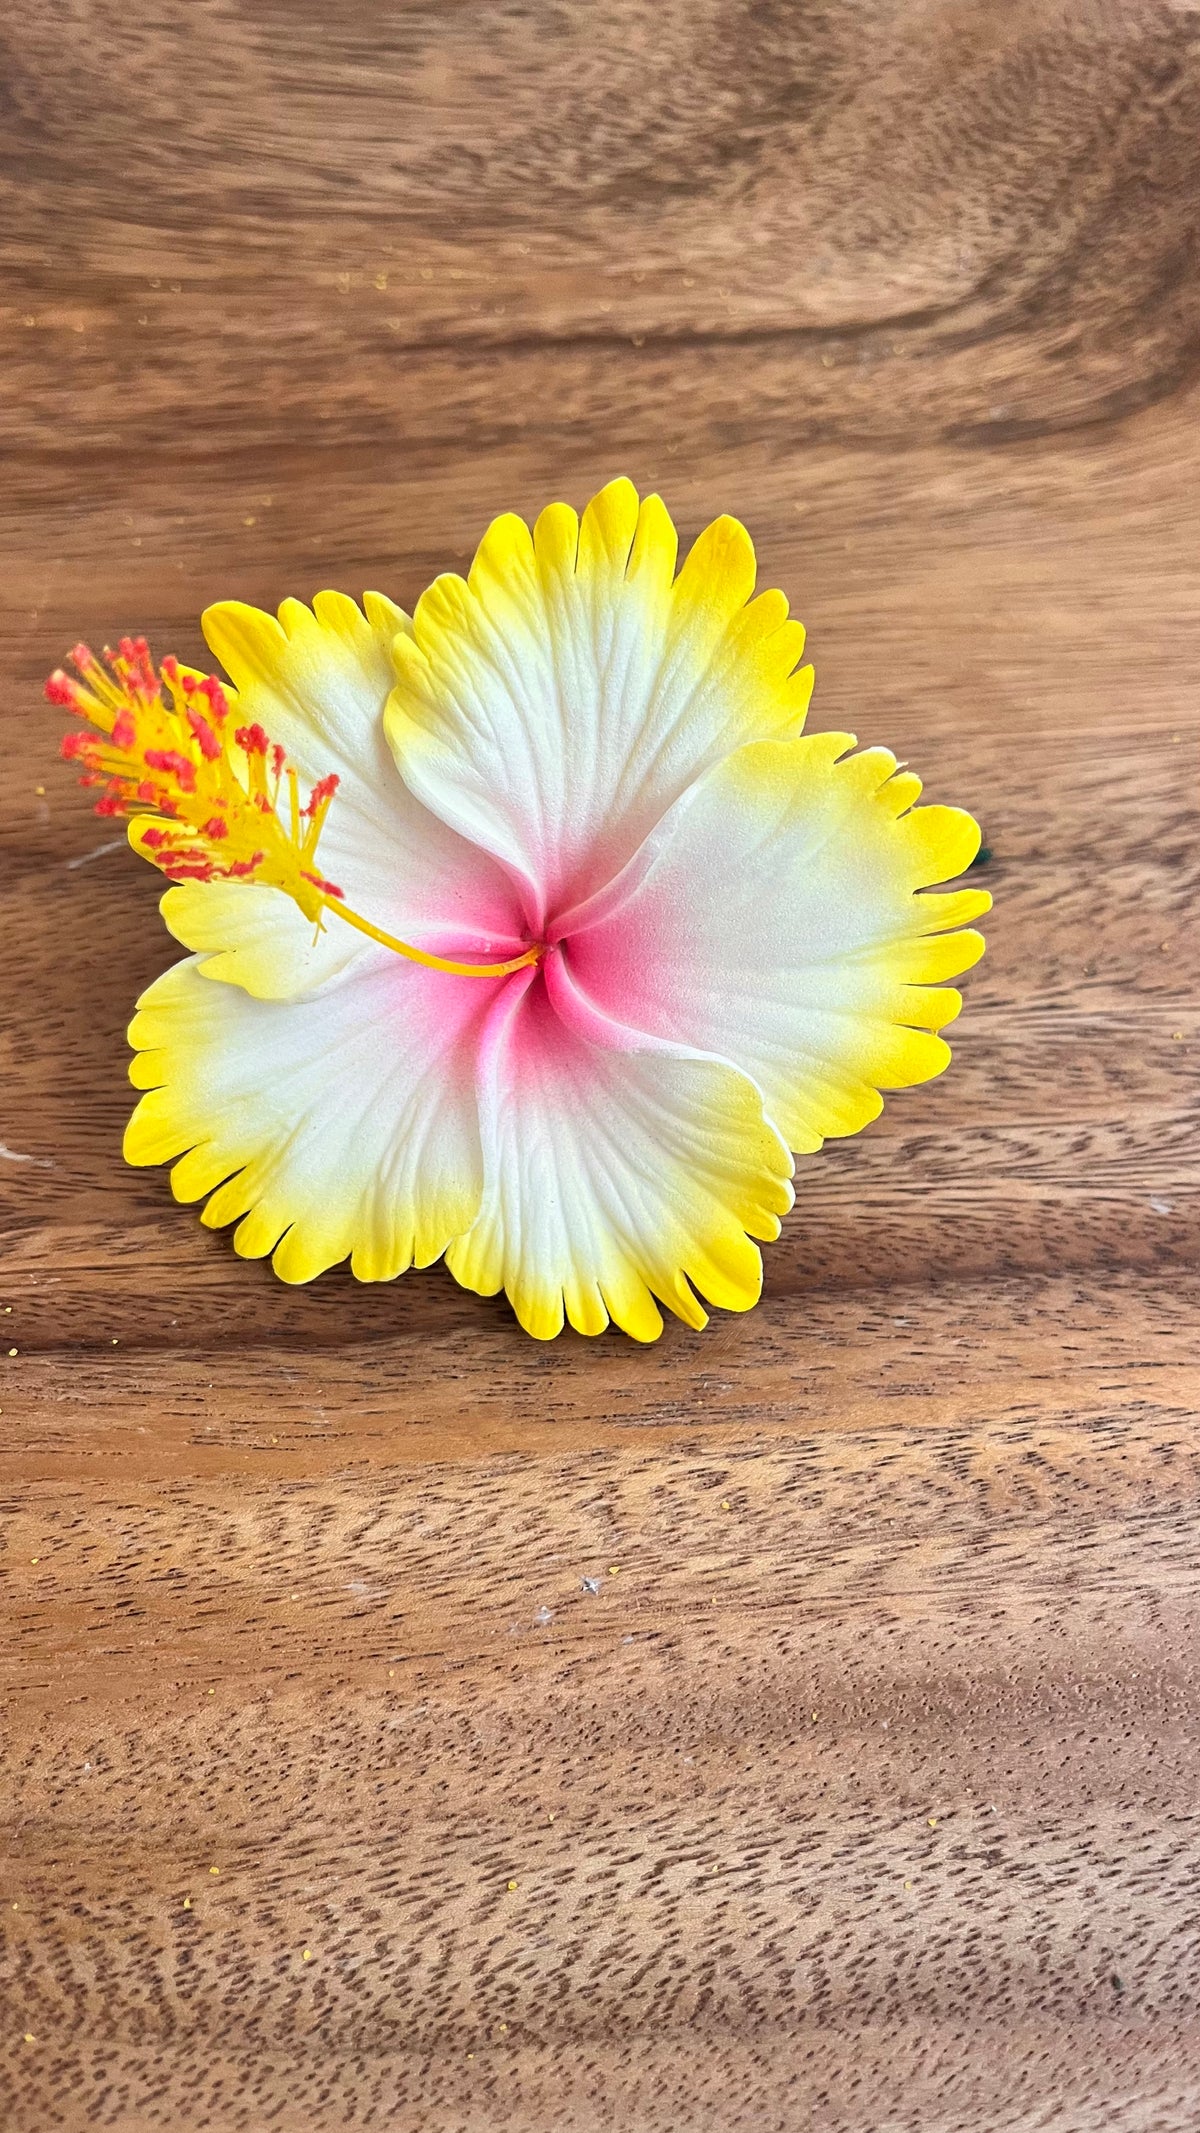 hibiscus with stem